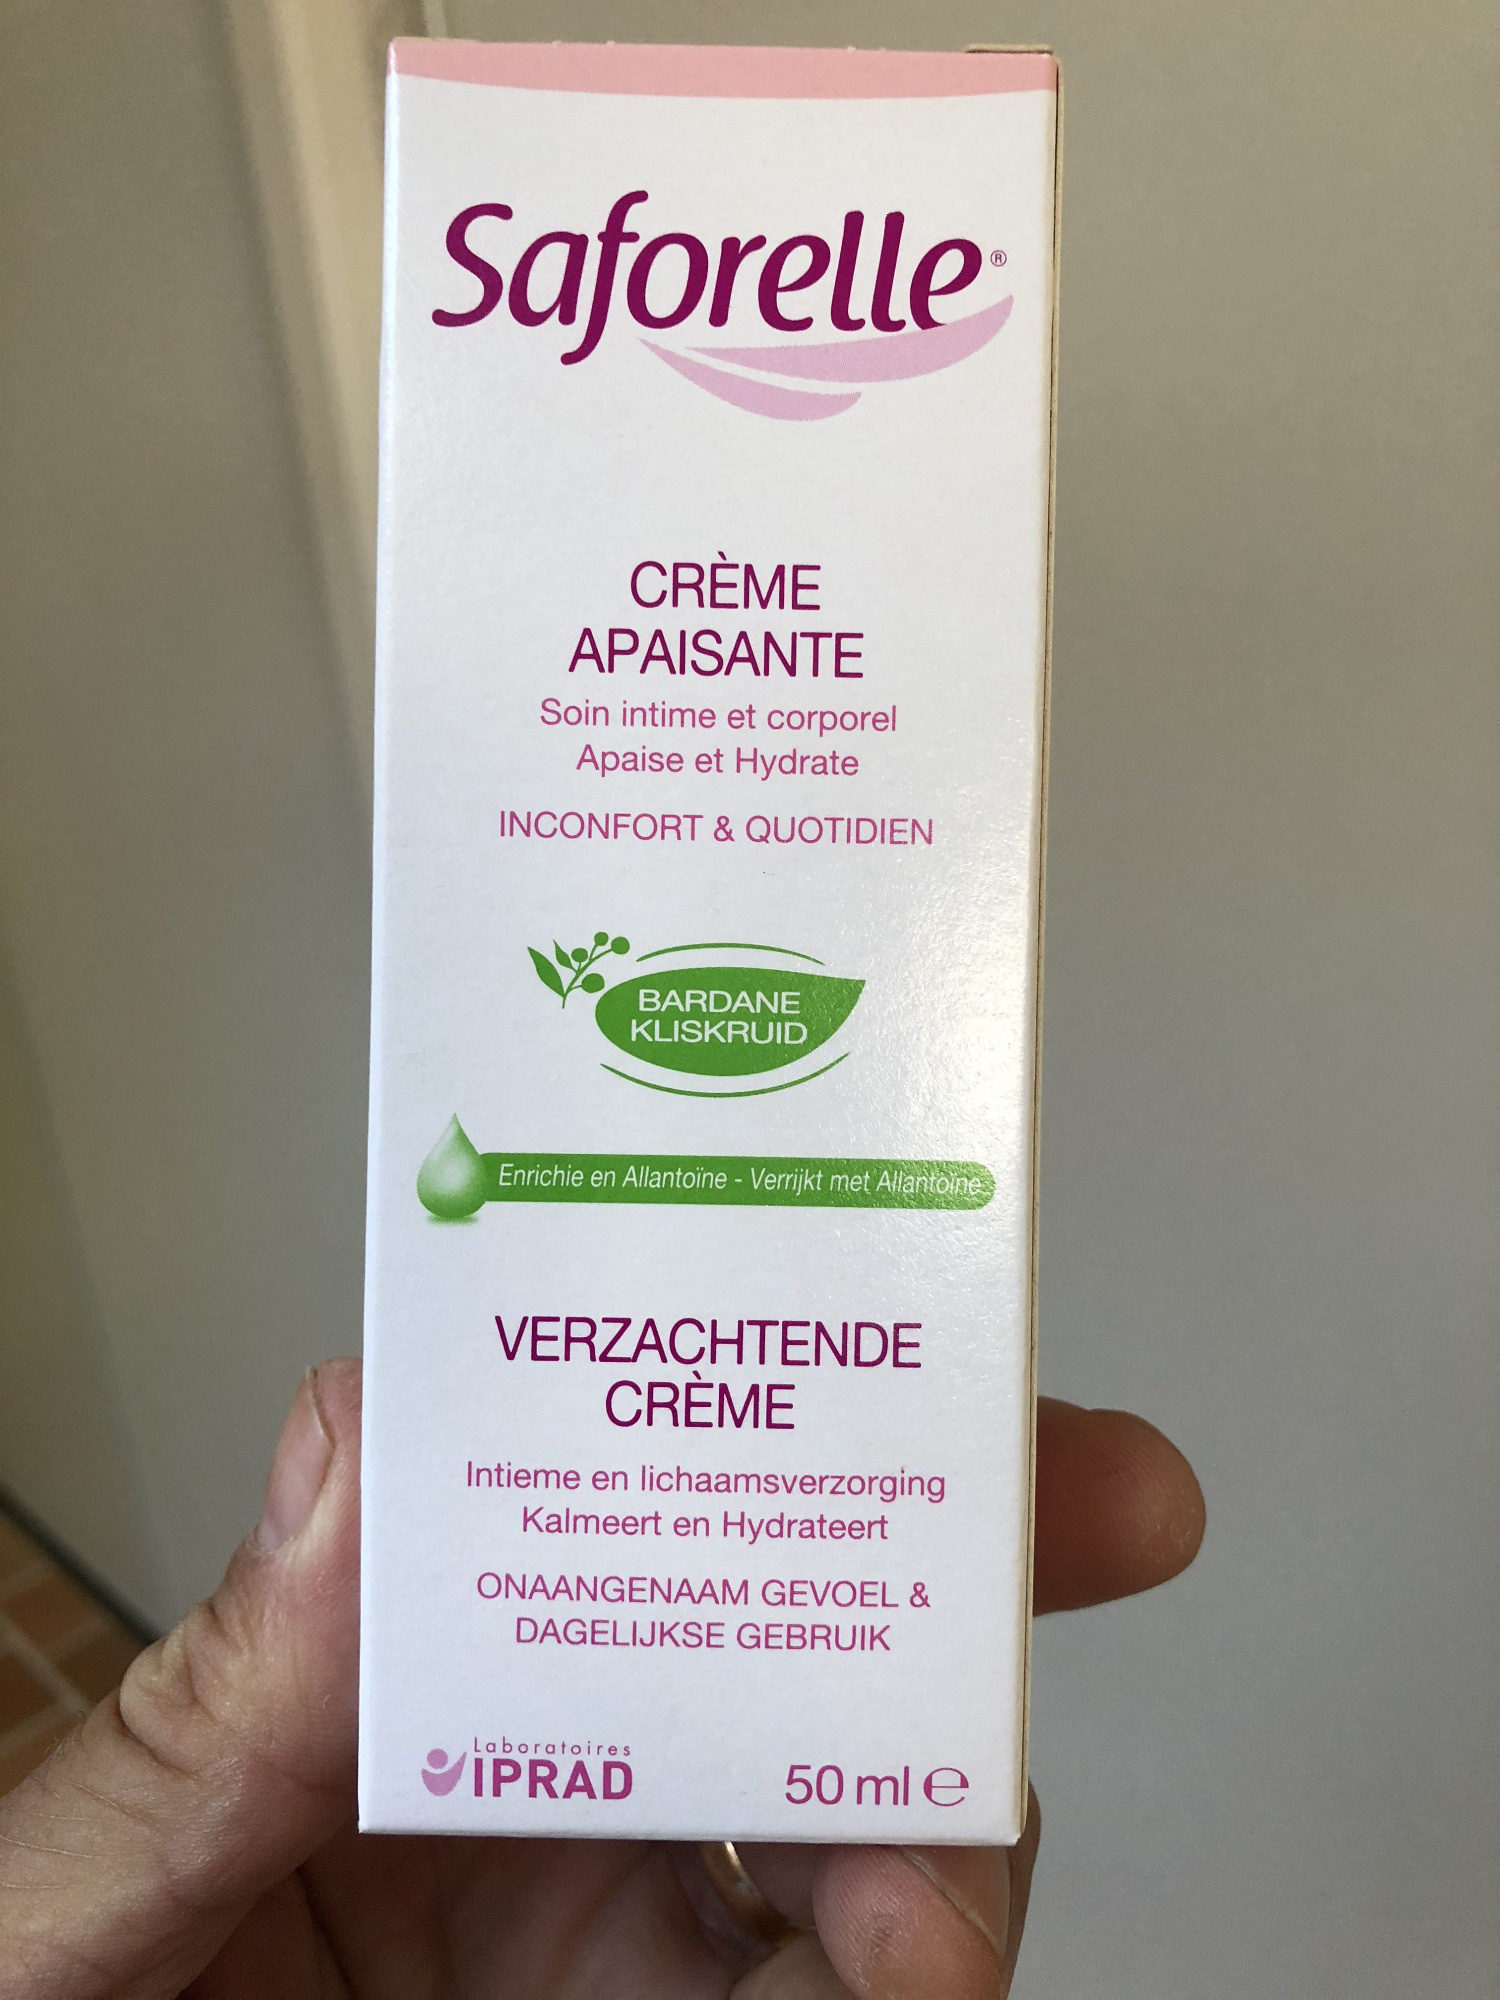 Saforelle crème apaisante - Produkt - en